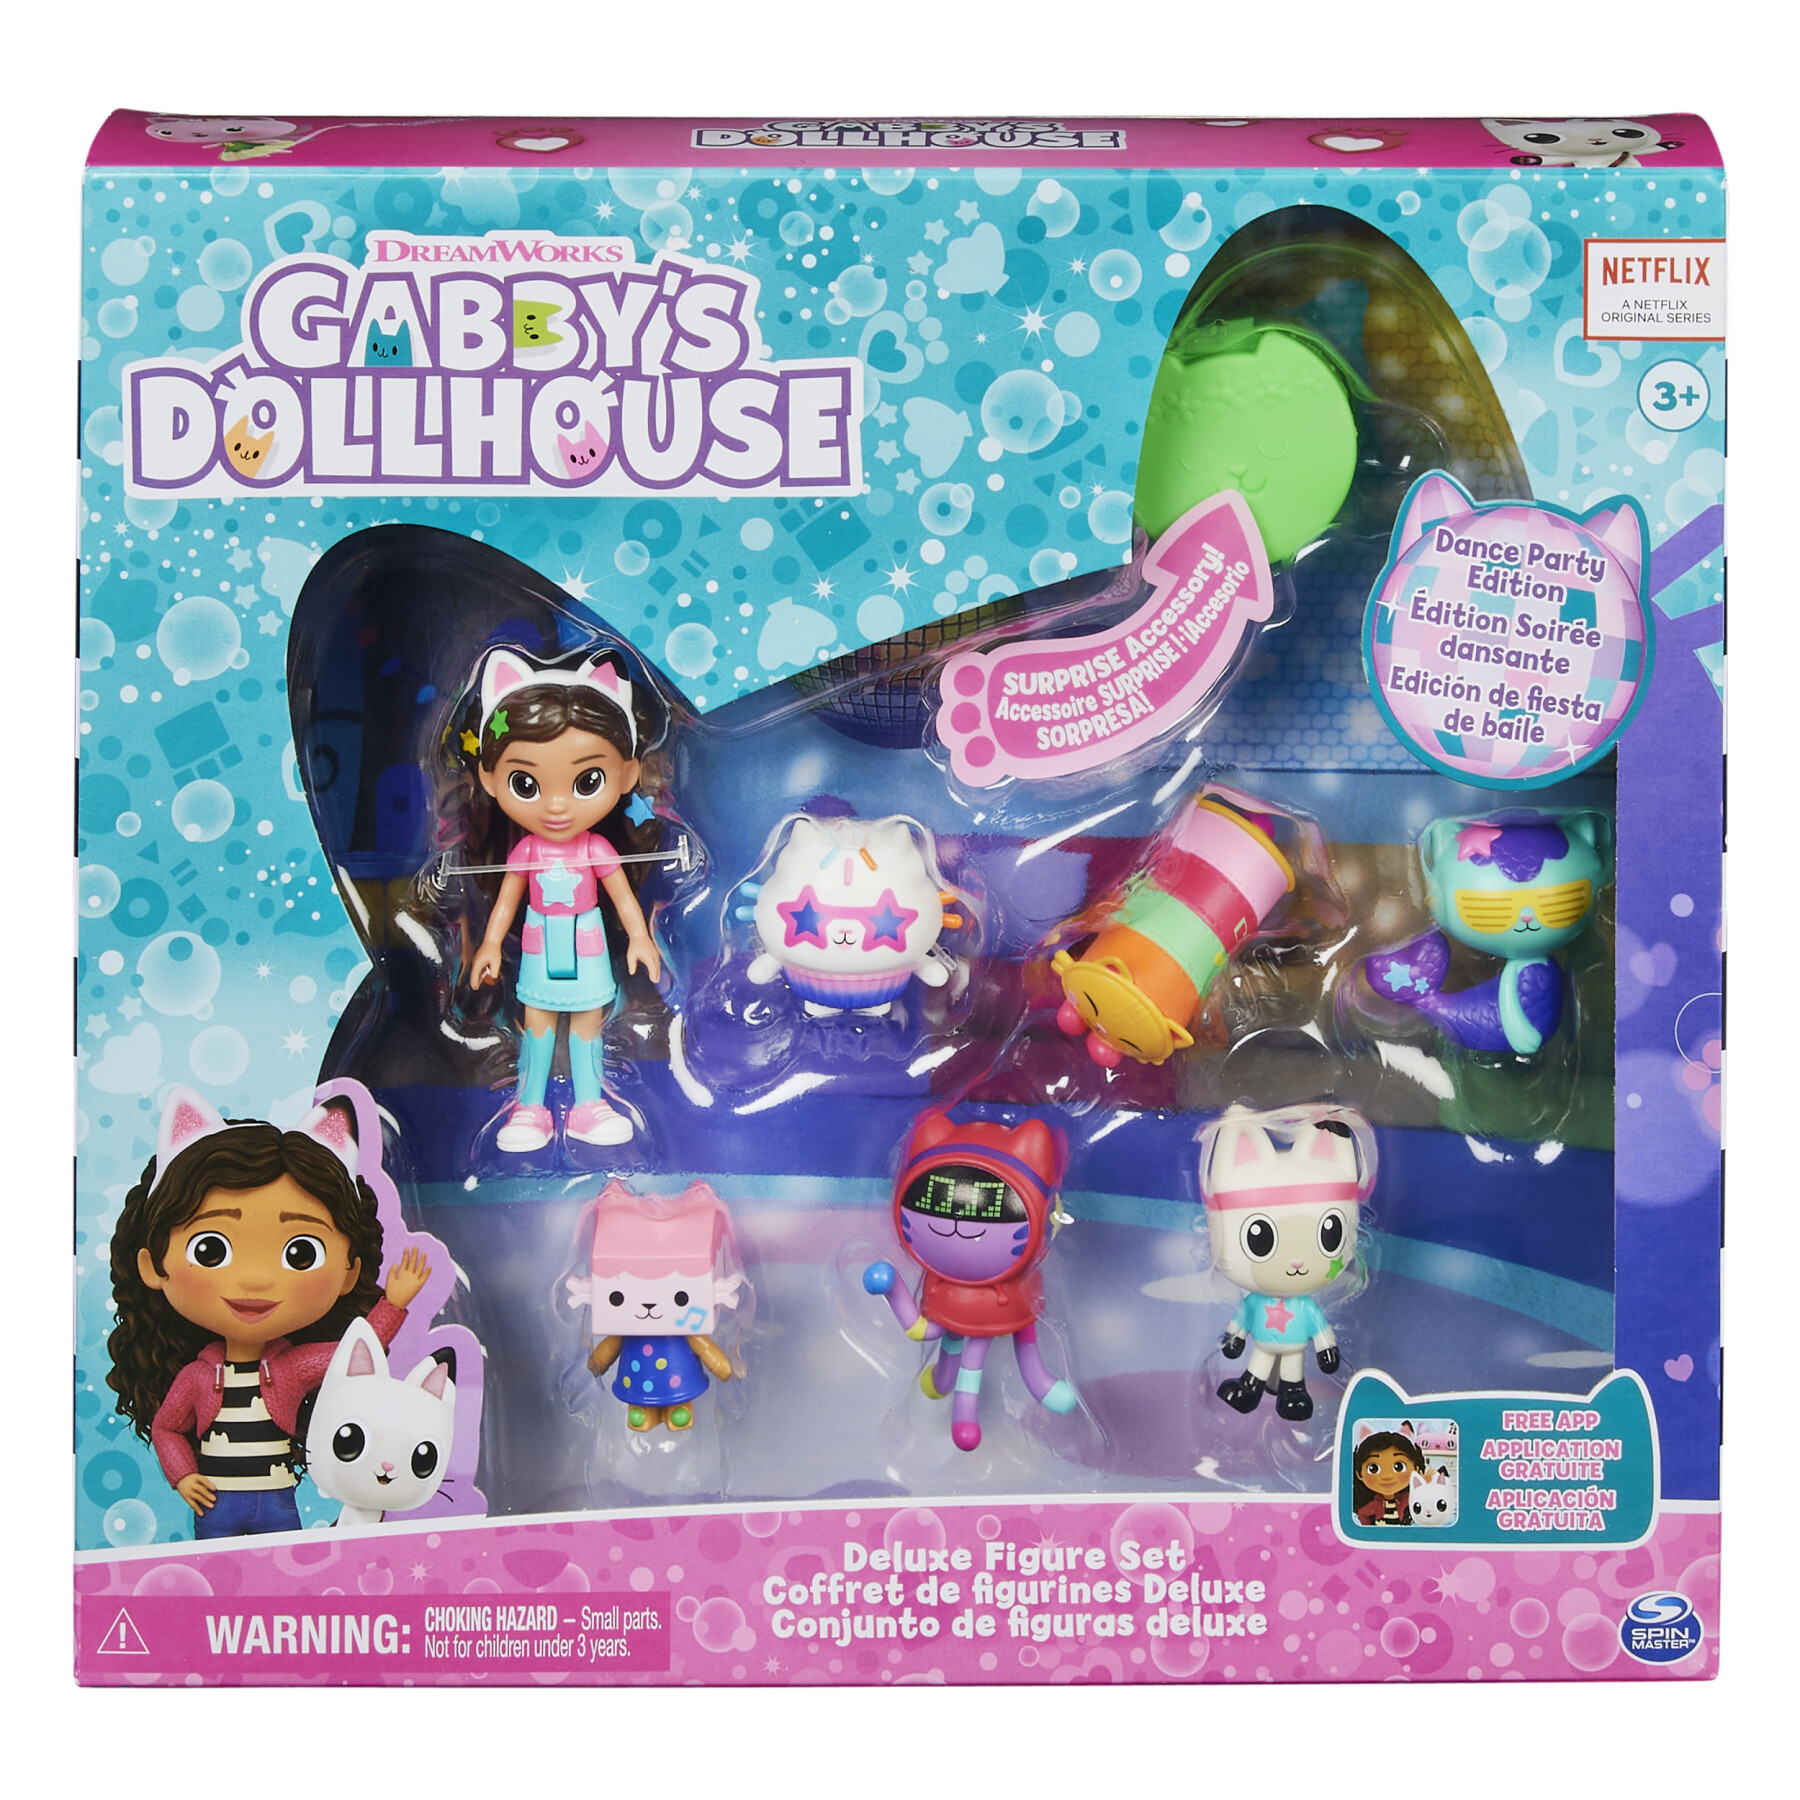 Gabby's dollhouse, set di personaggi a tema festa da ballo con bambola di gabby, 6 gatti giocattolo e accessori, per bambini dai 3 anni in su. - GABBY'S DOLLHOUSE